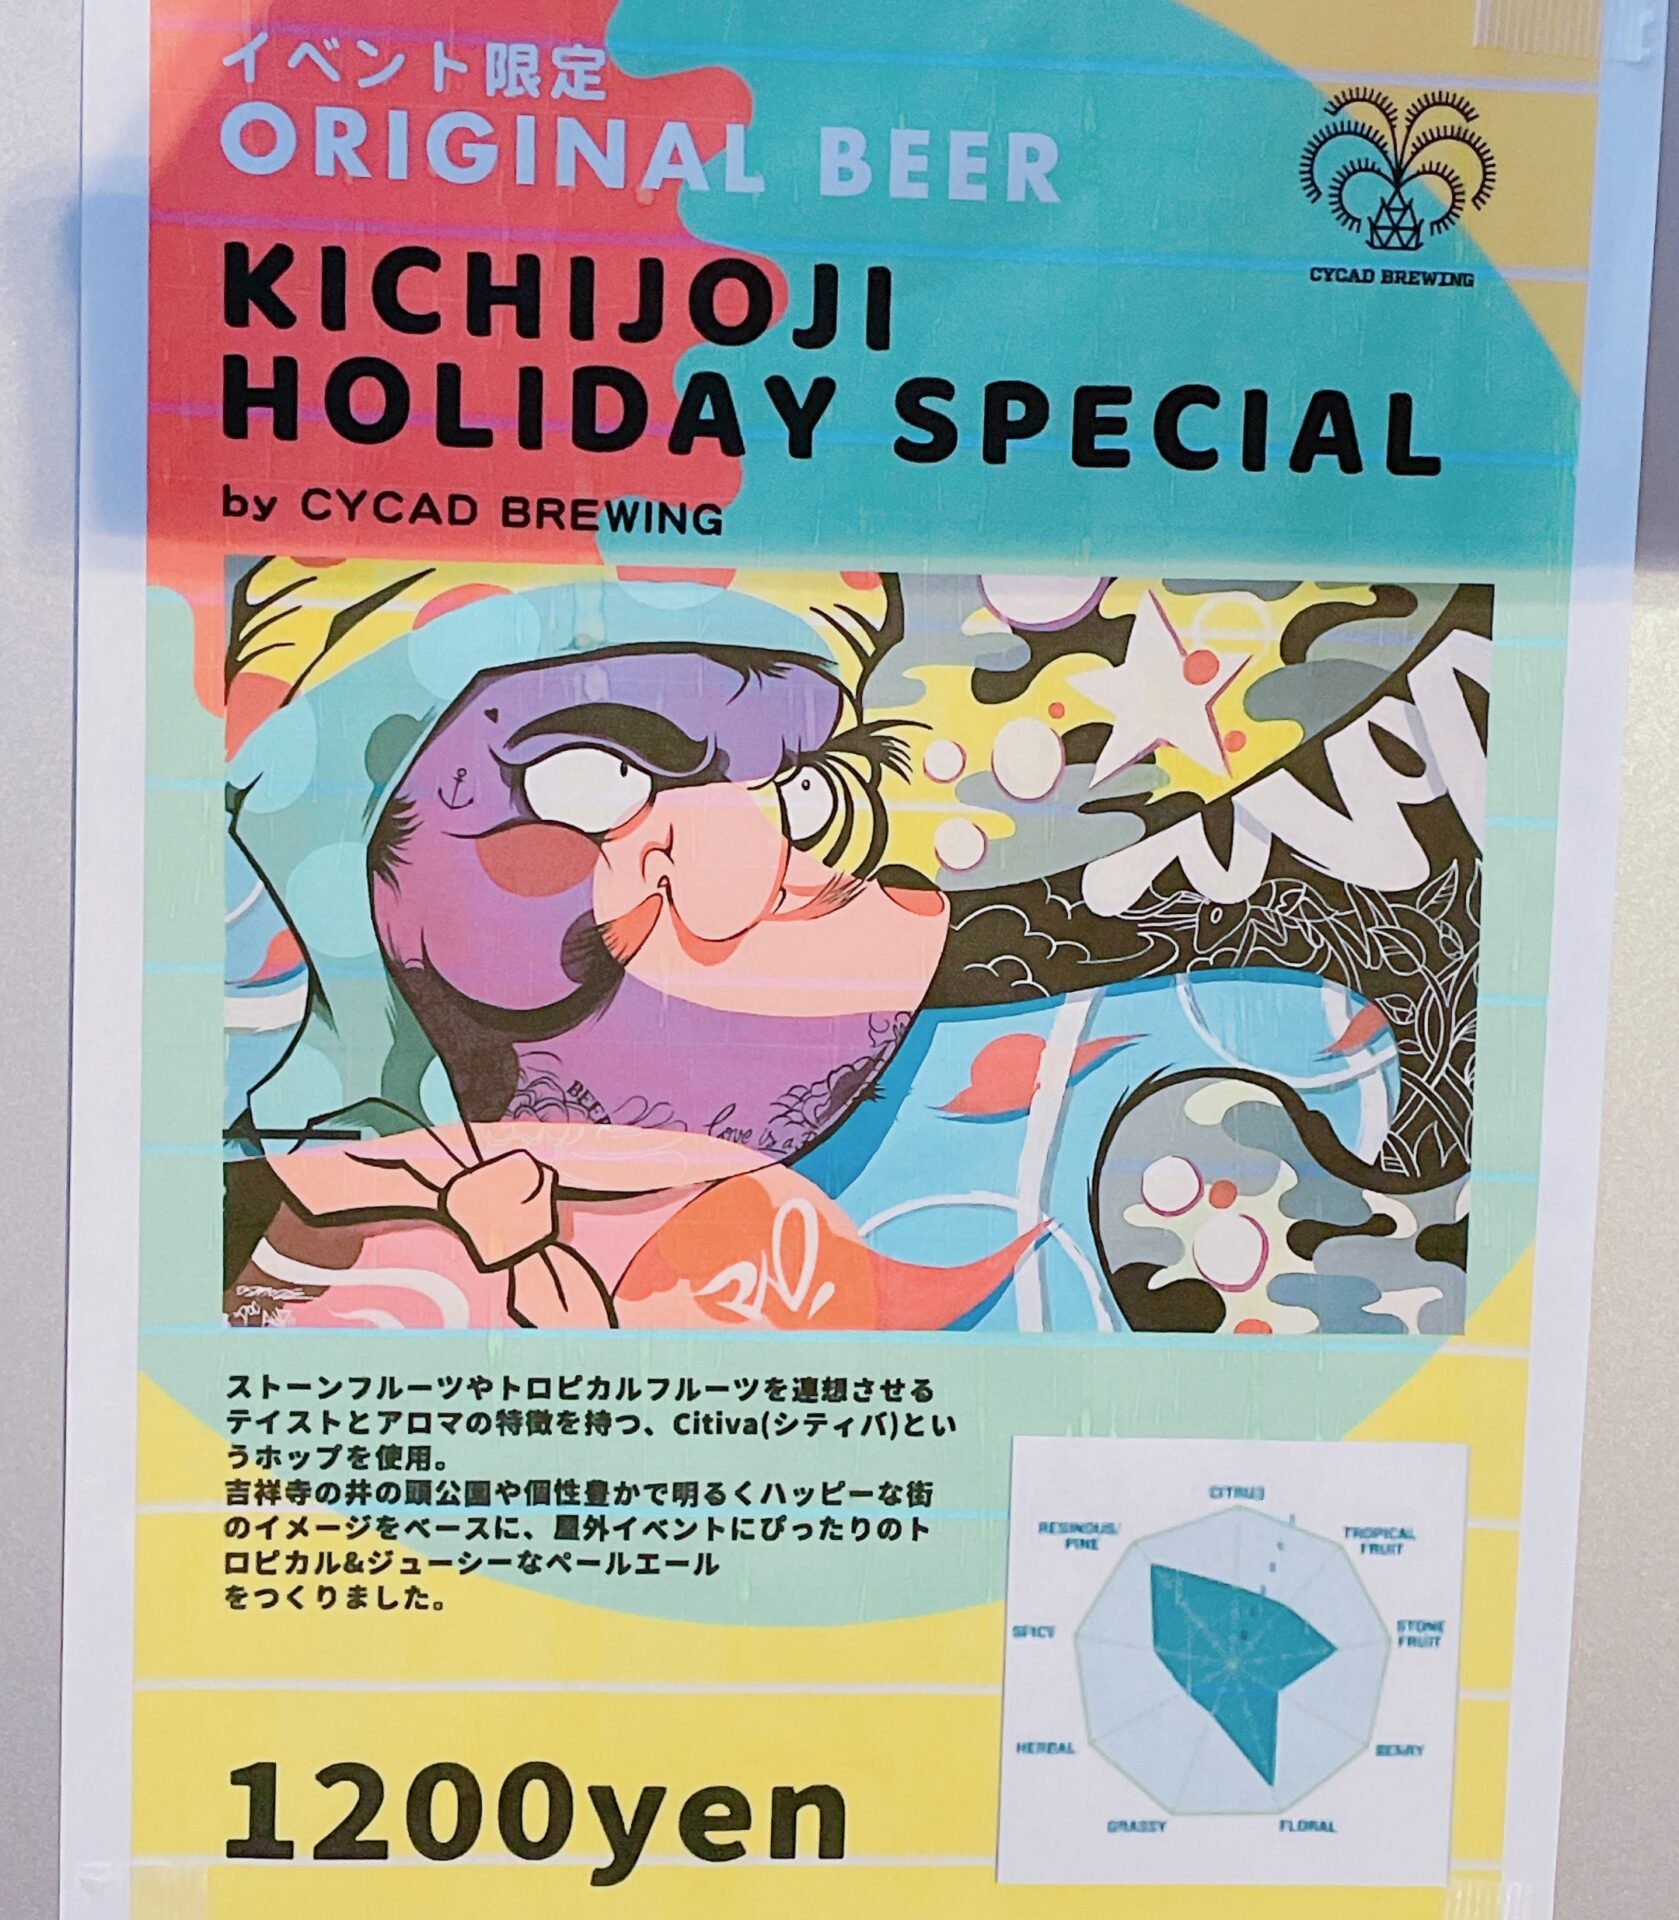 限定のオリジナルクラフトビール「KICHIJOJI HOLIDAY SPECIAL」